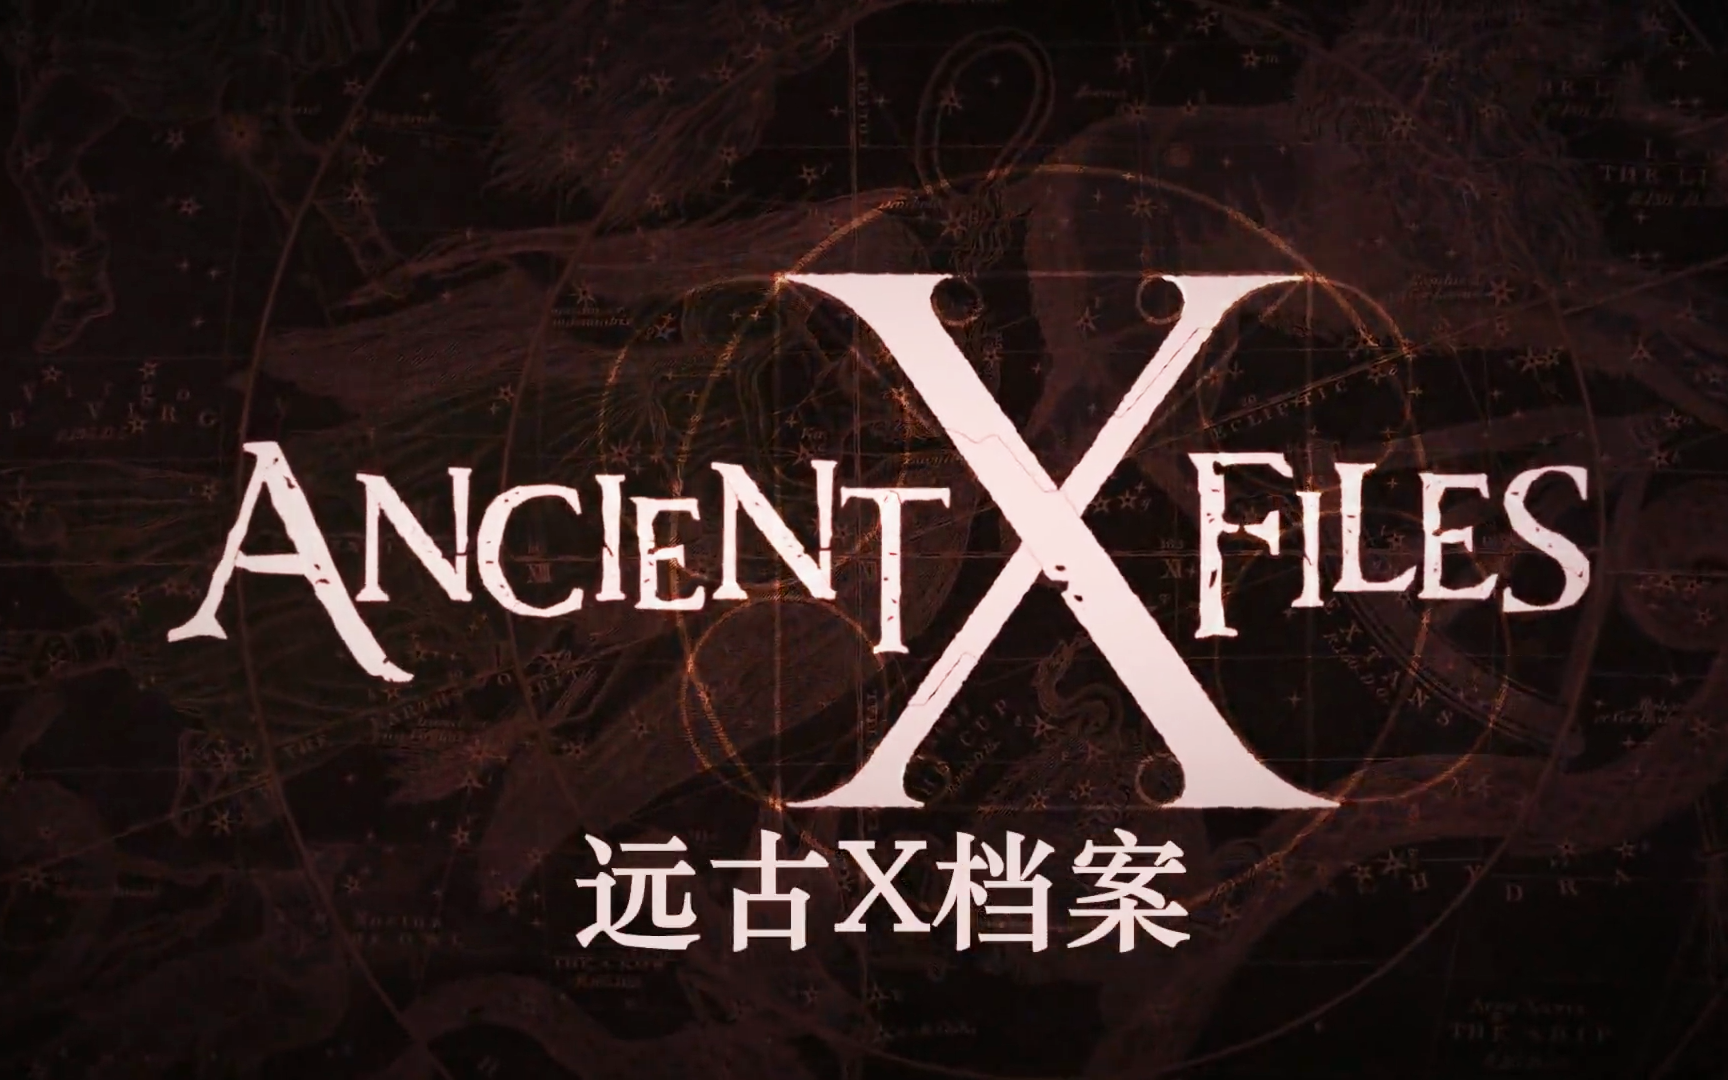 【纪录片】远古X档案 Ancient X-Files